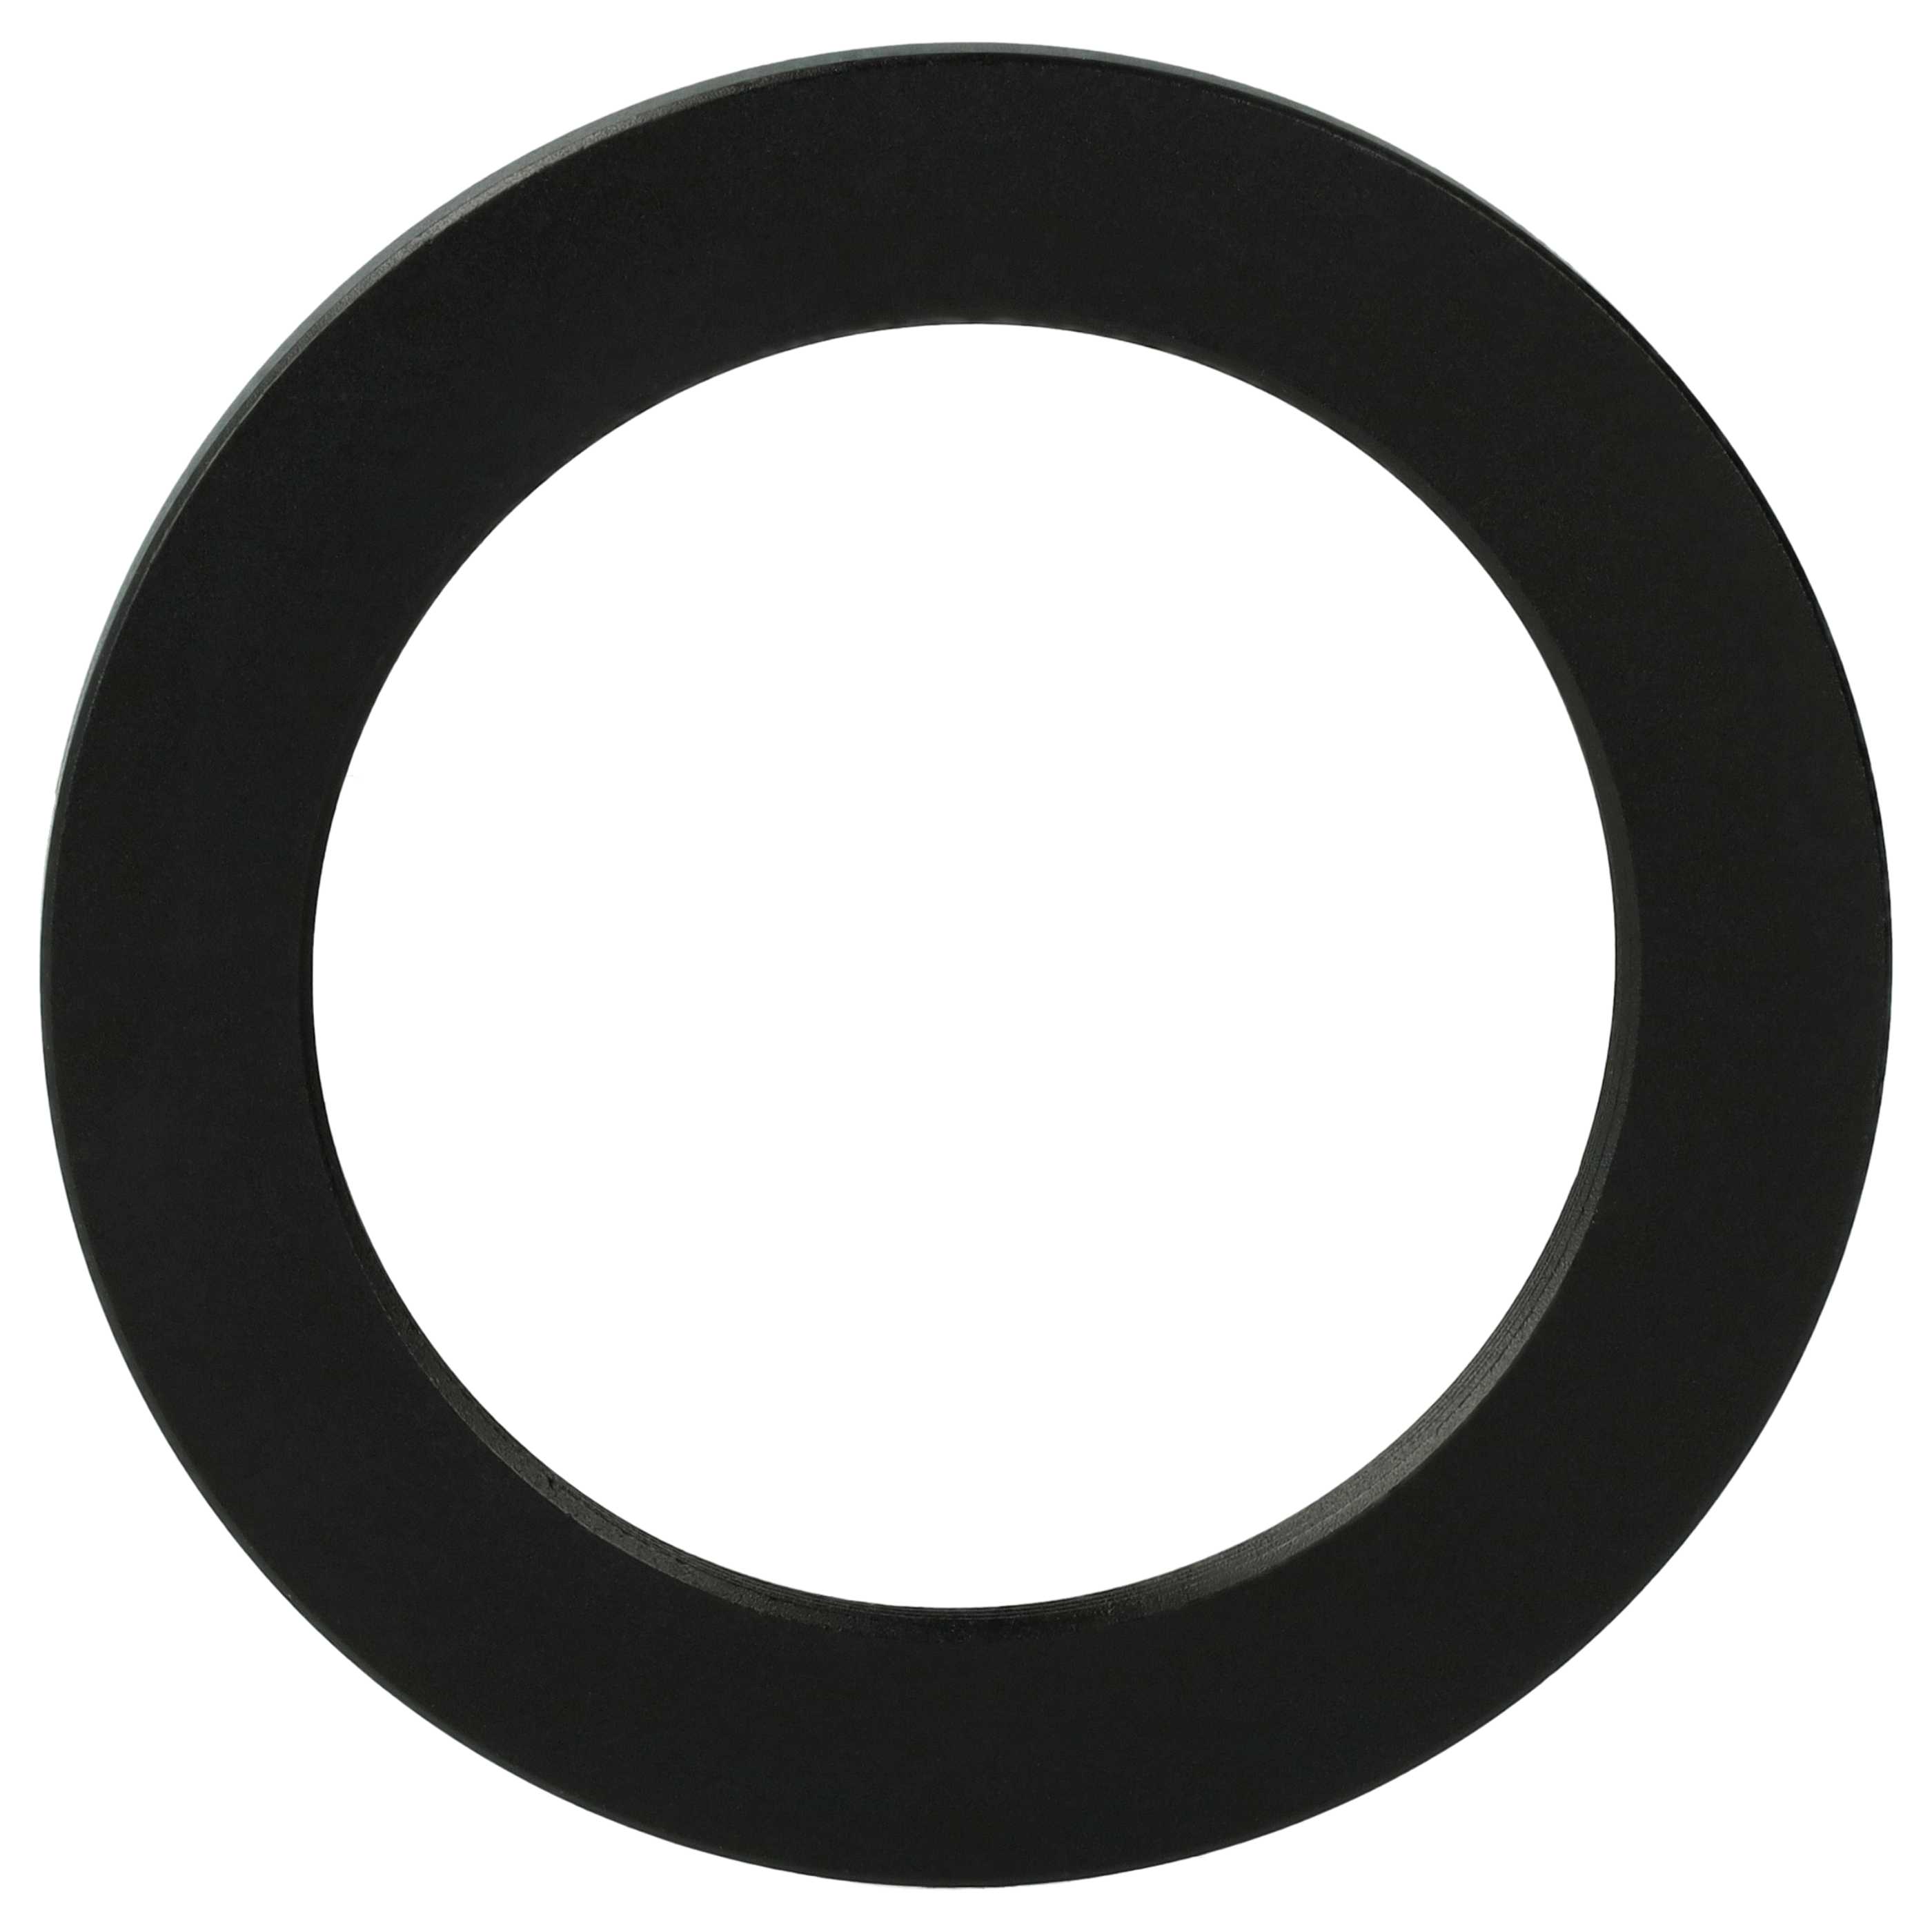 Anillo adaptador Step Down de 58 mm a 43 mm para objetivo de la cámara - Adaptador de filtro, metal, negro